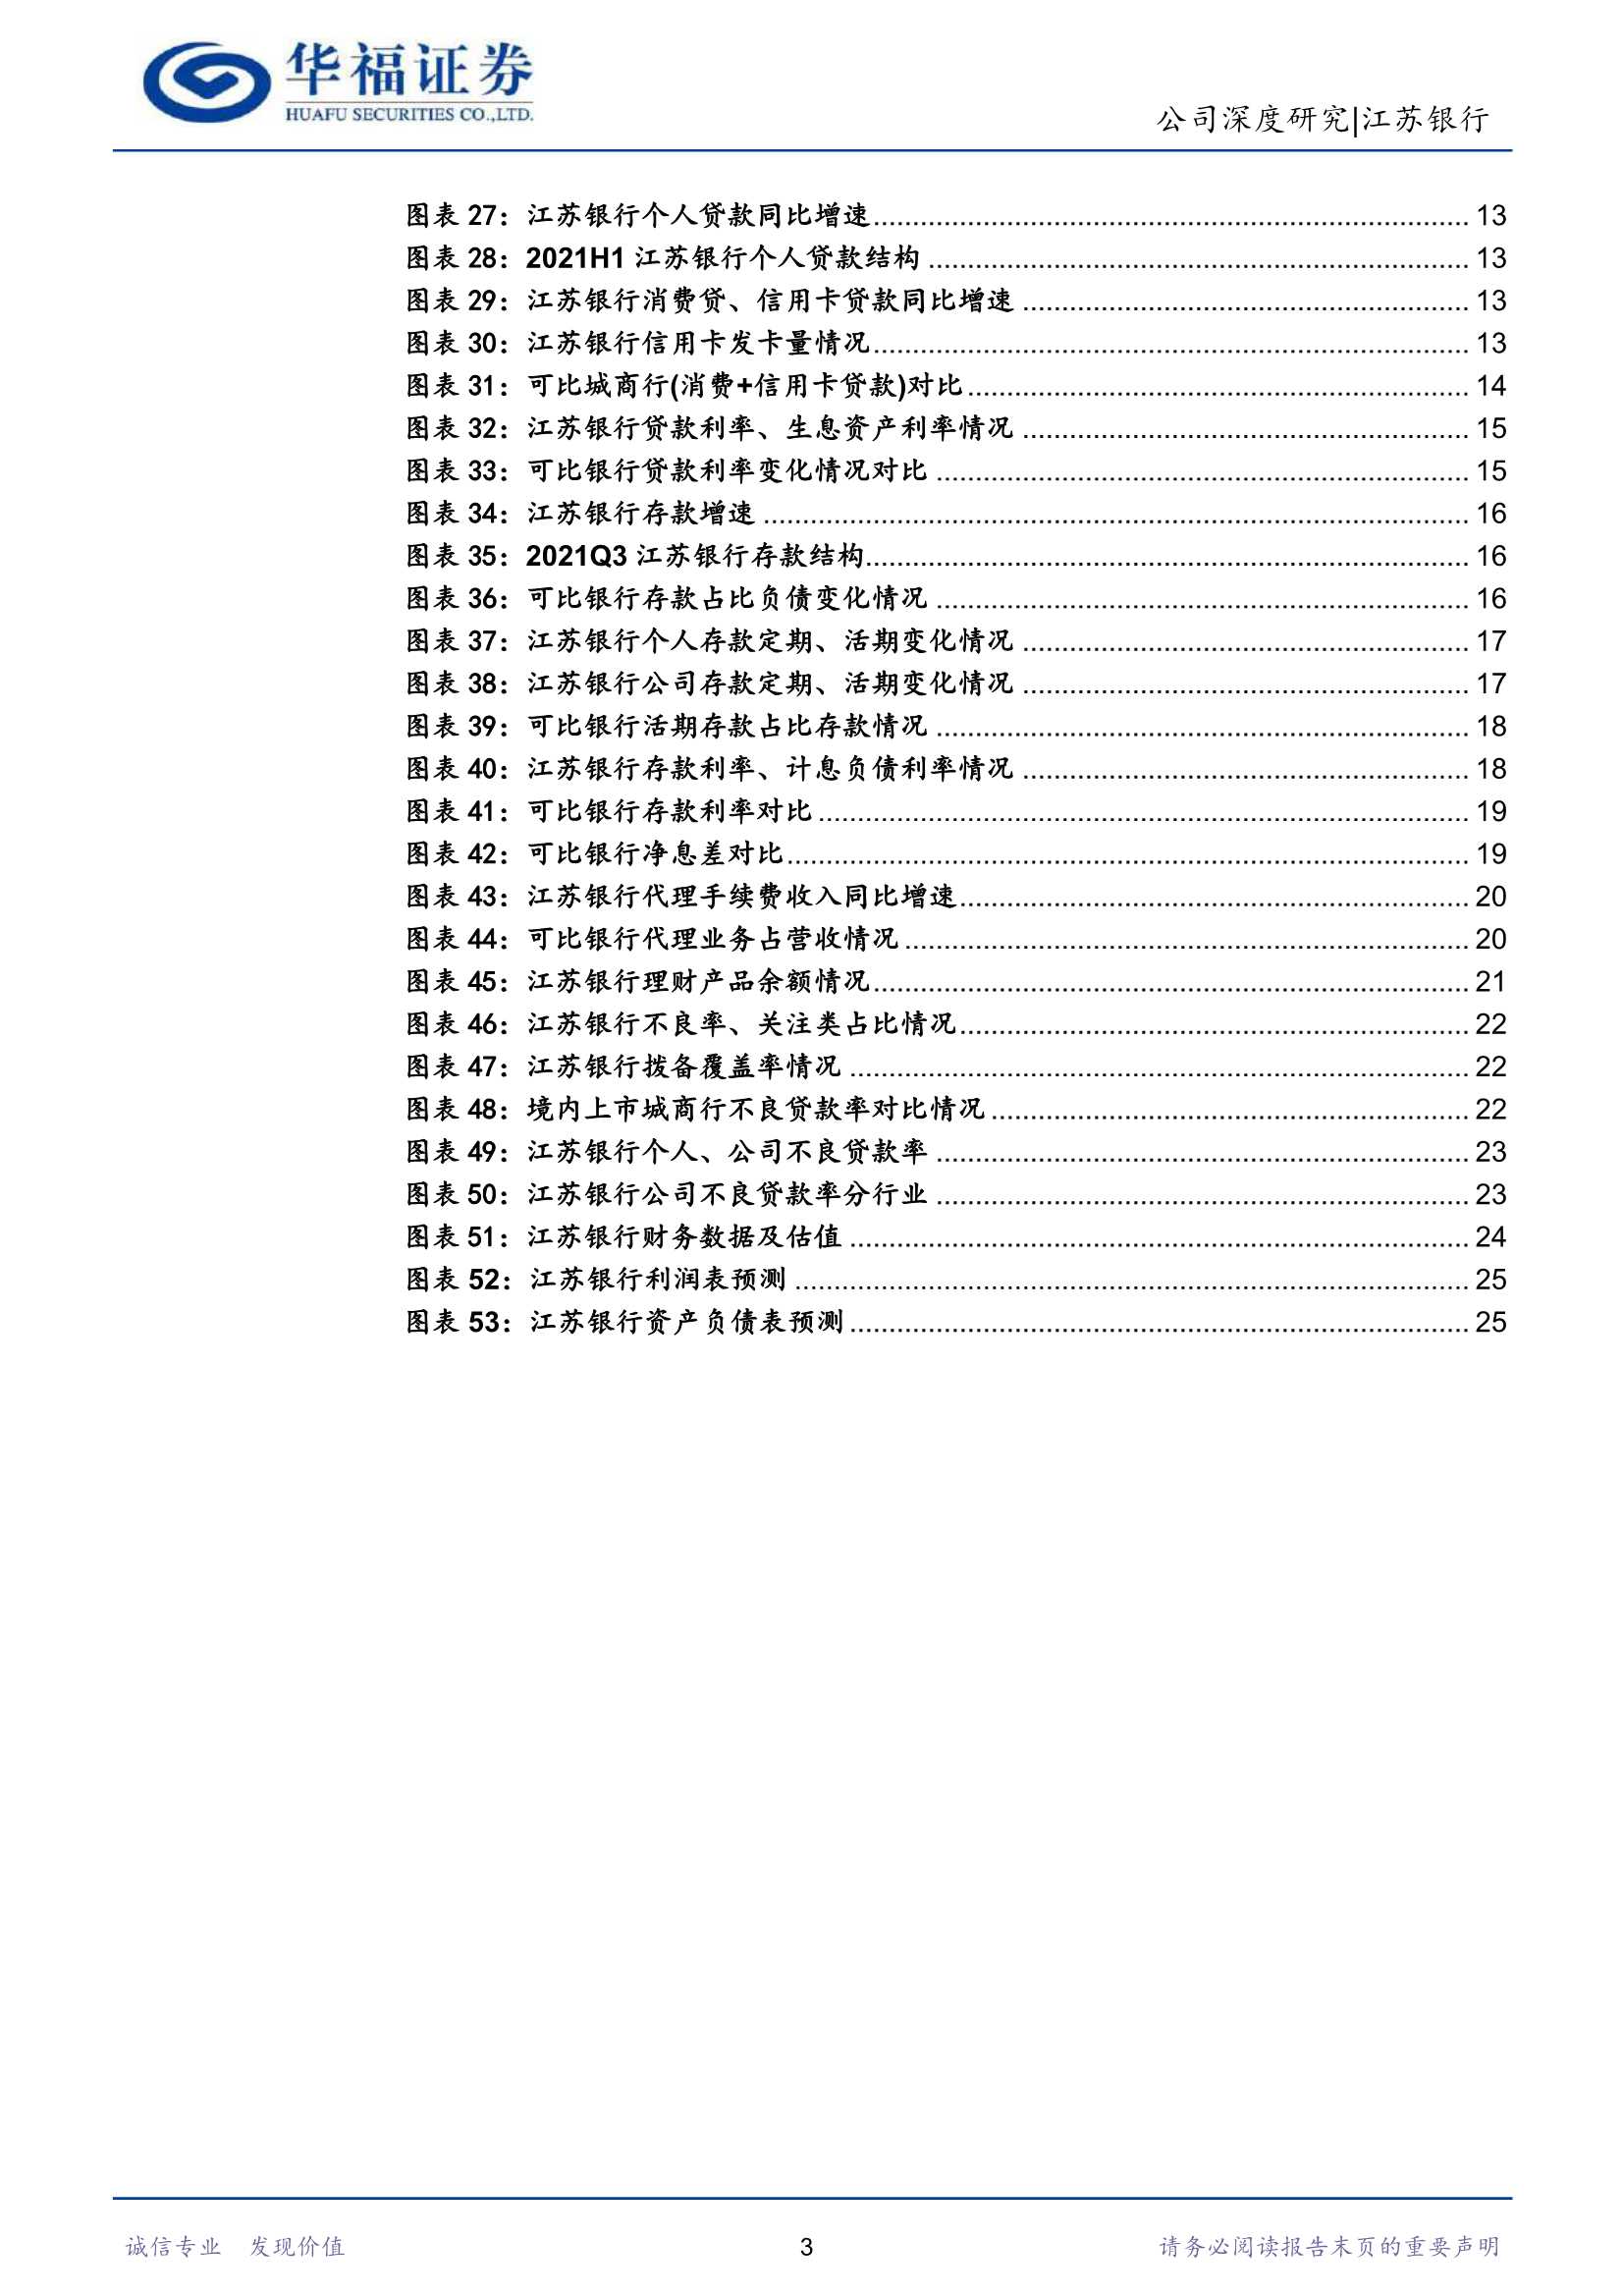 华福证券-江苏银行-600919-区域优势明显，小微、零售业务双轮驱动-20211209-28页